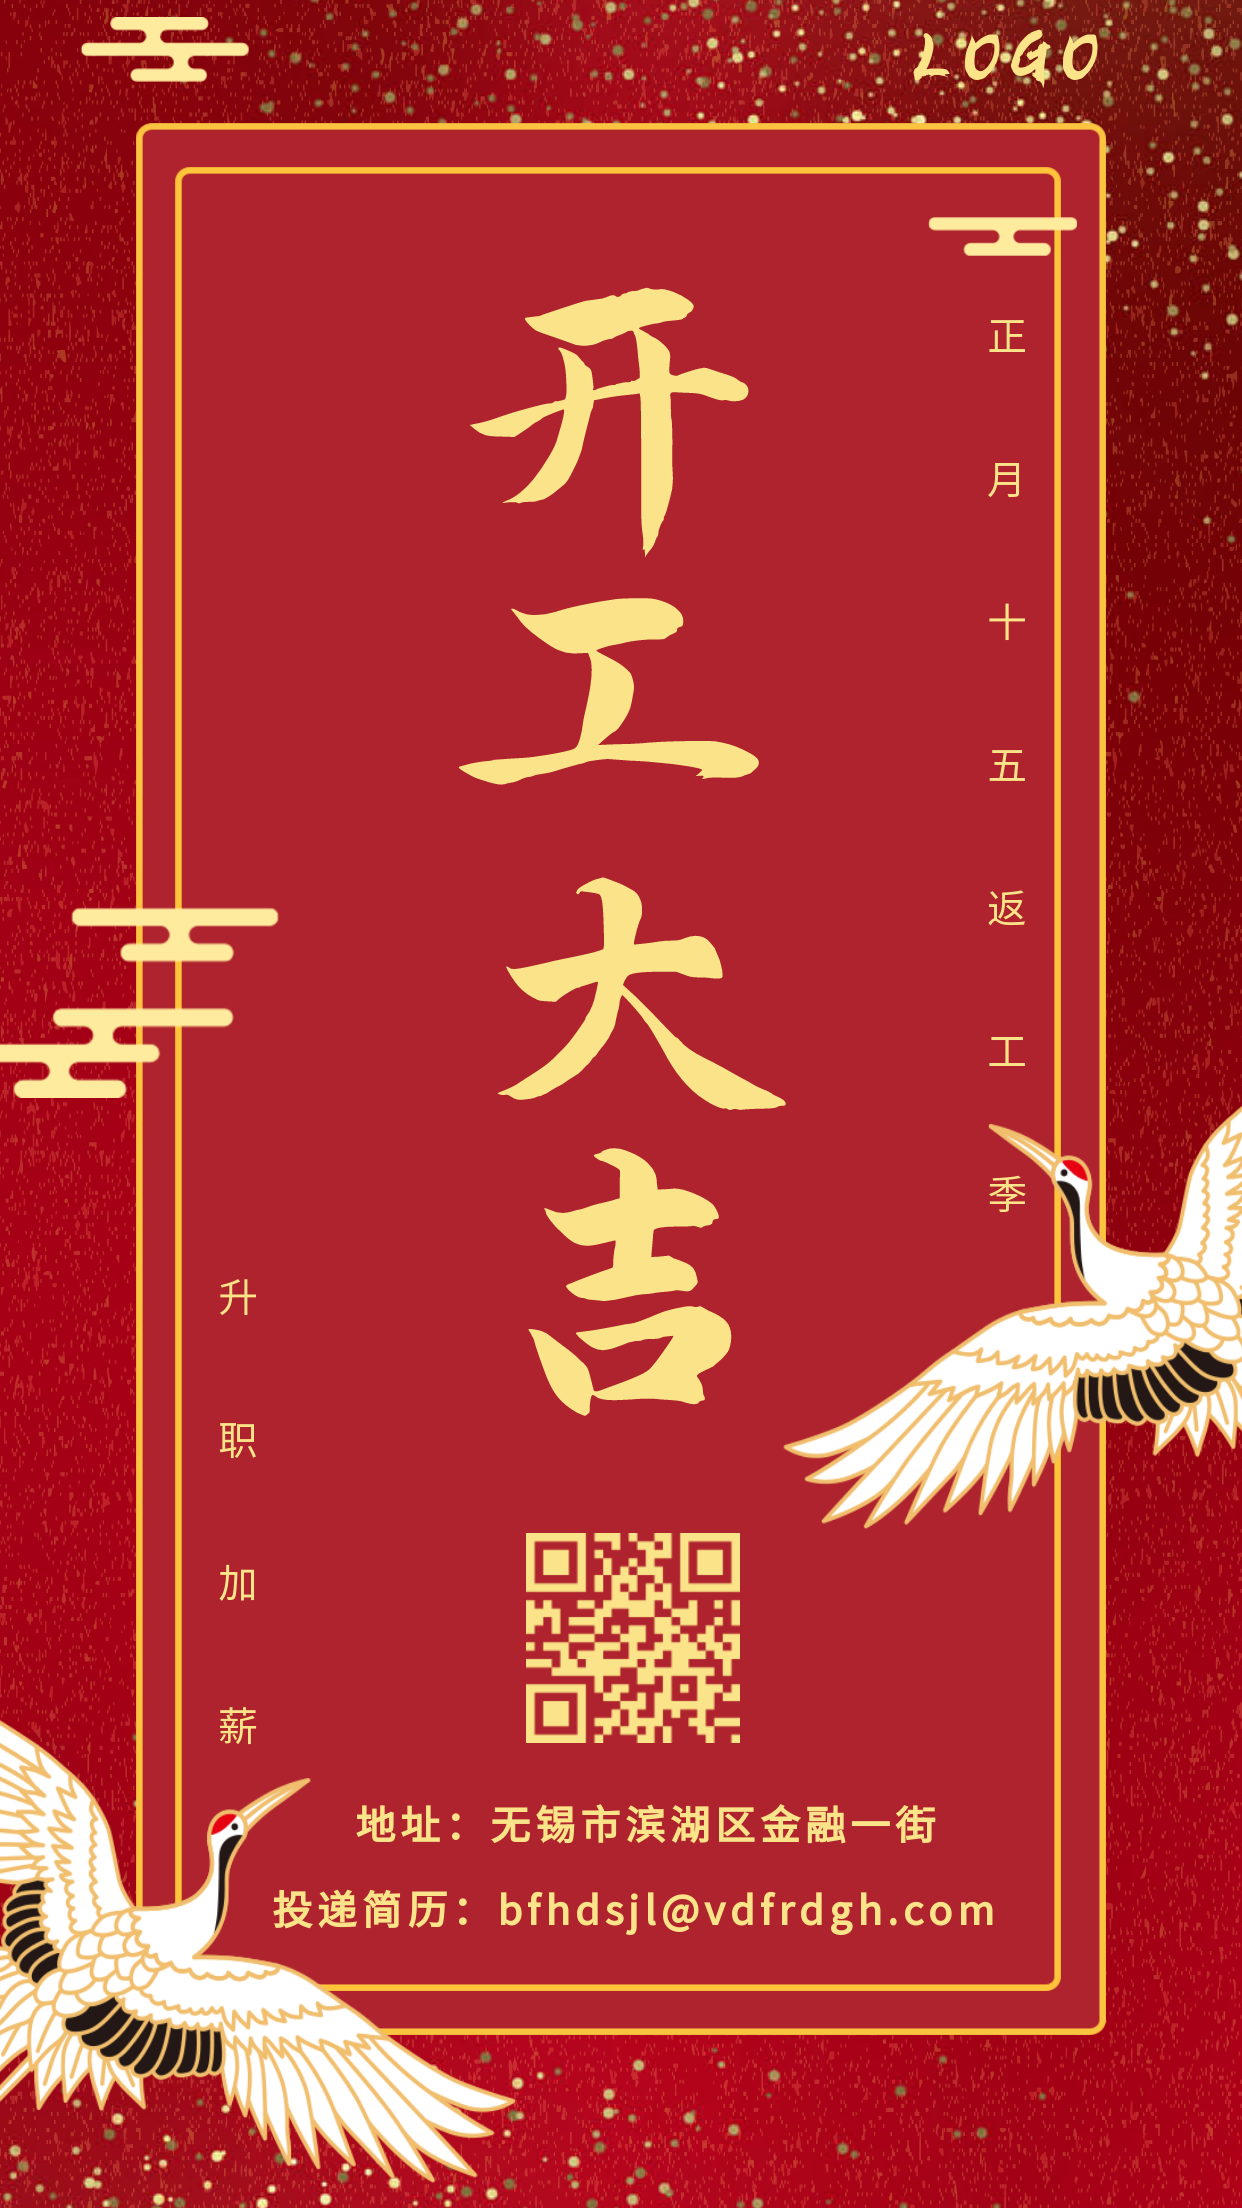 开工大吉中国风新年祝福竖版手机海报